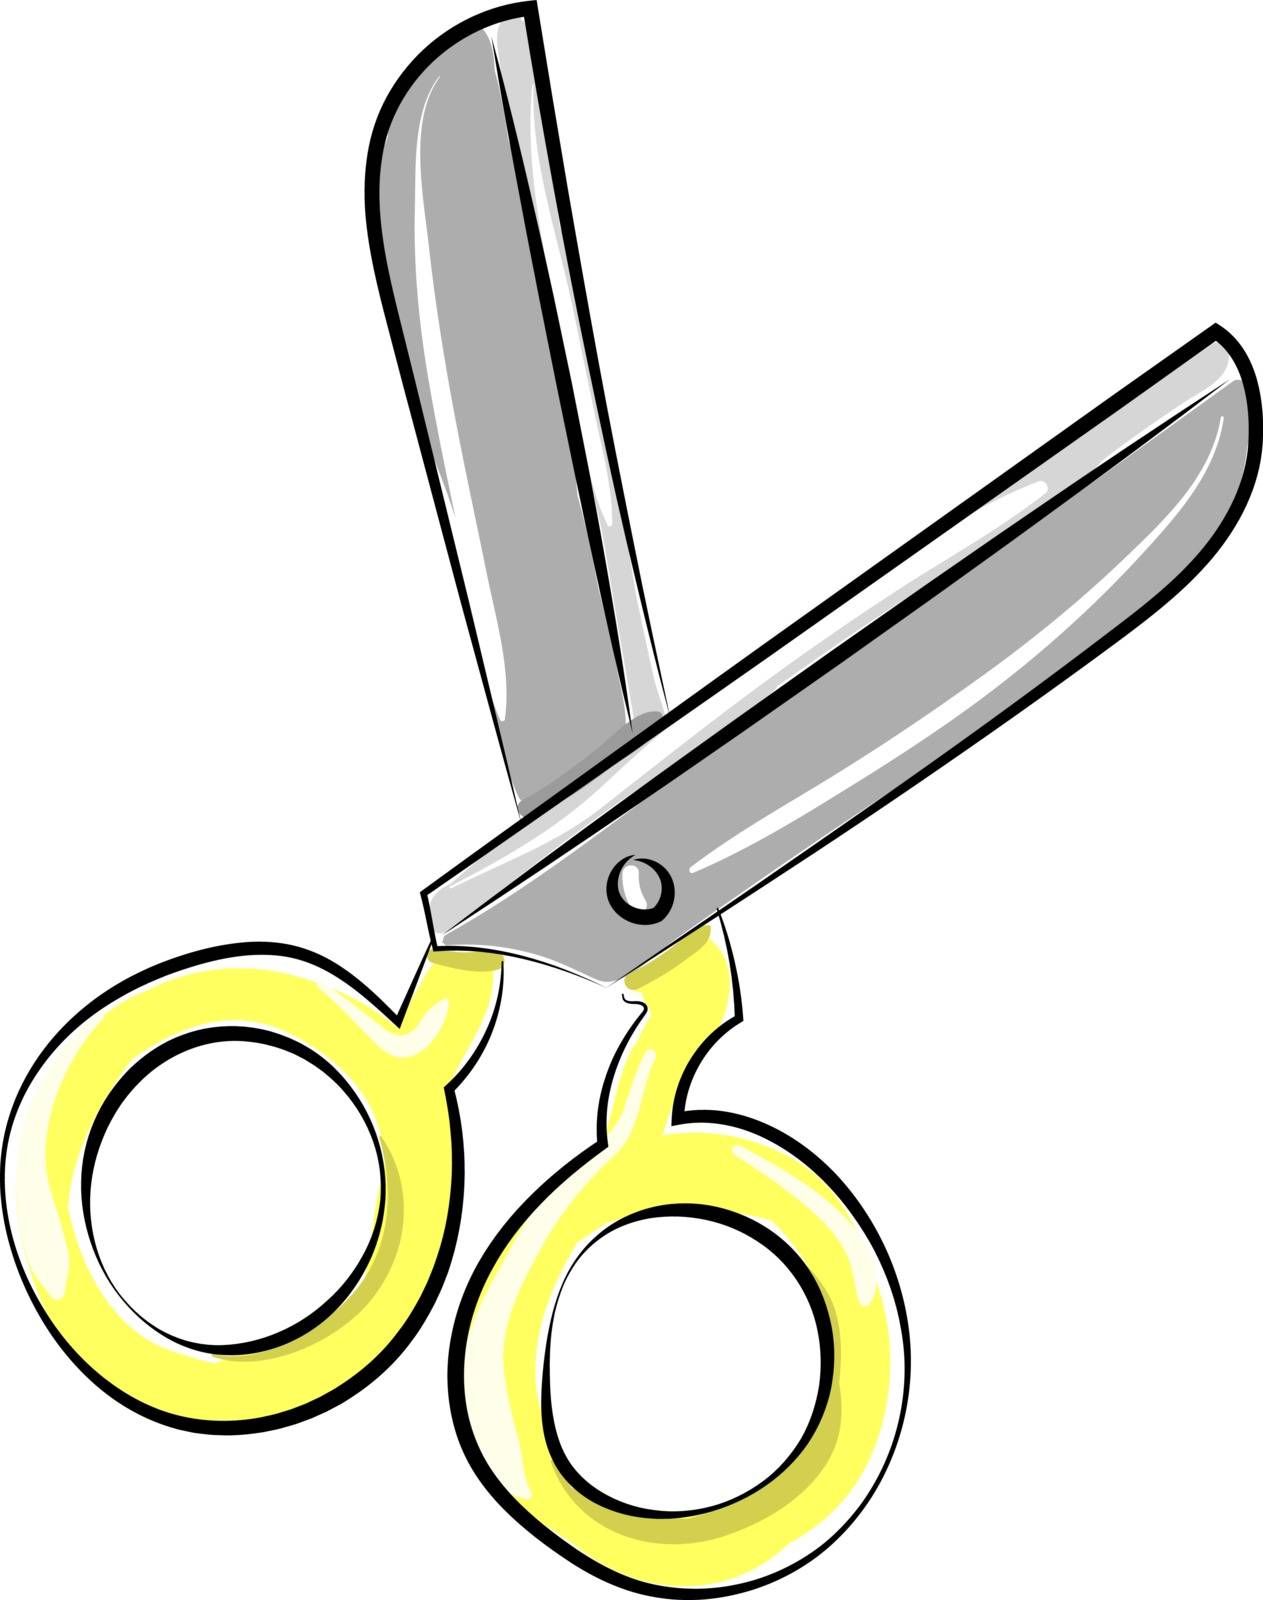 Scissors, illustration, vector on white background.